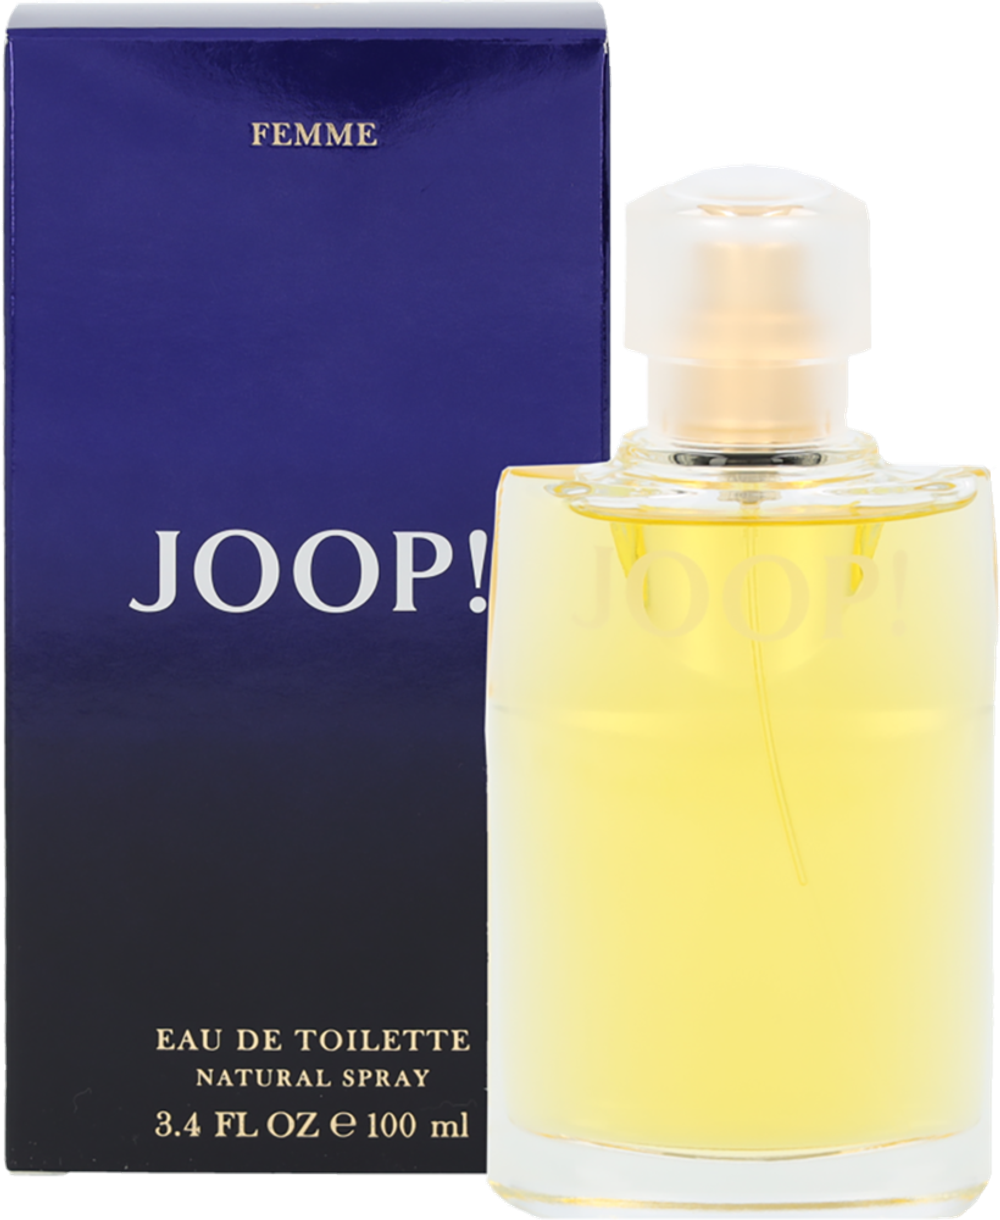 Tilbud på Joop! Femme Edt Spray fra Fleggaard til 179 kr.